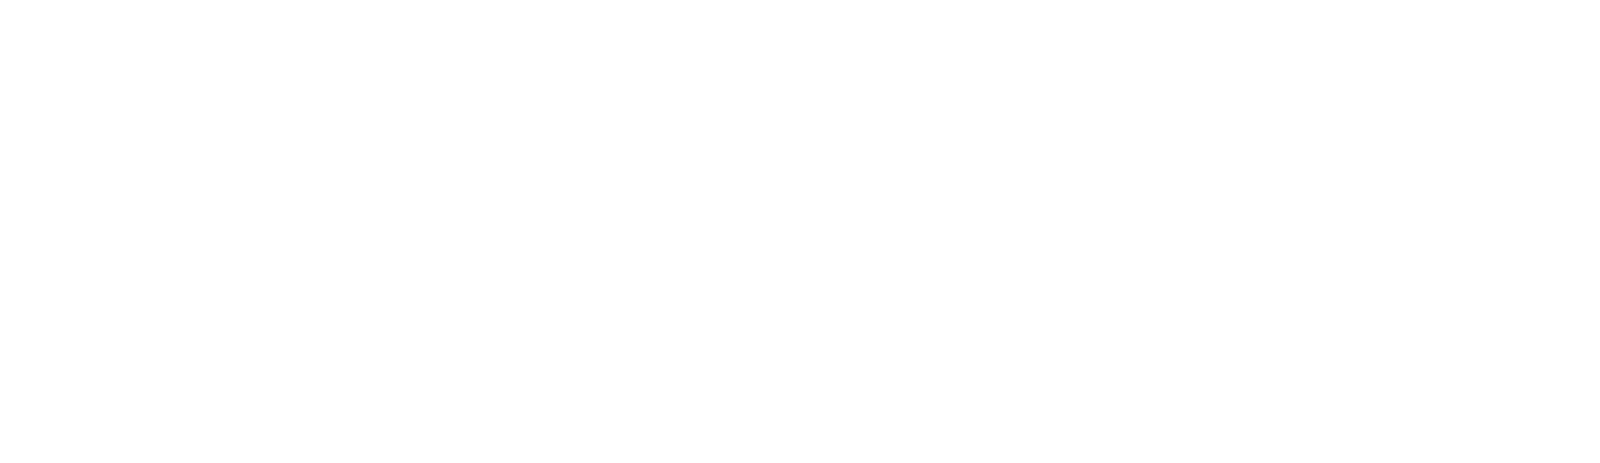 emergent-construction-logo-horizontal-white